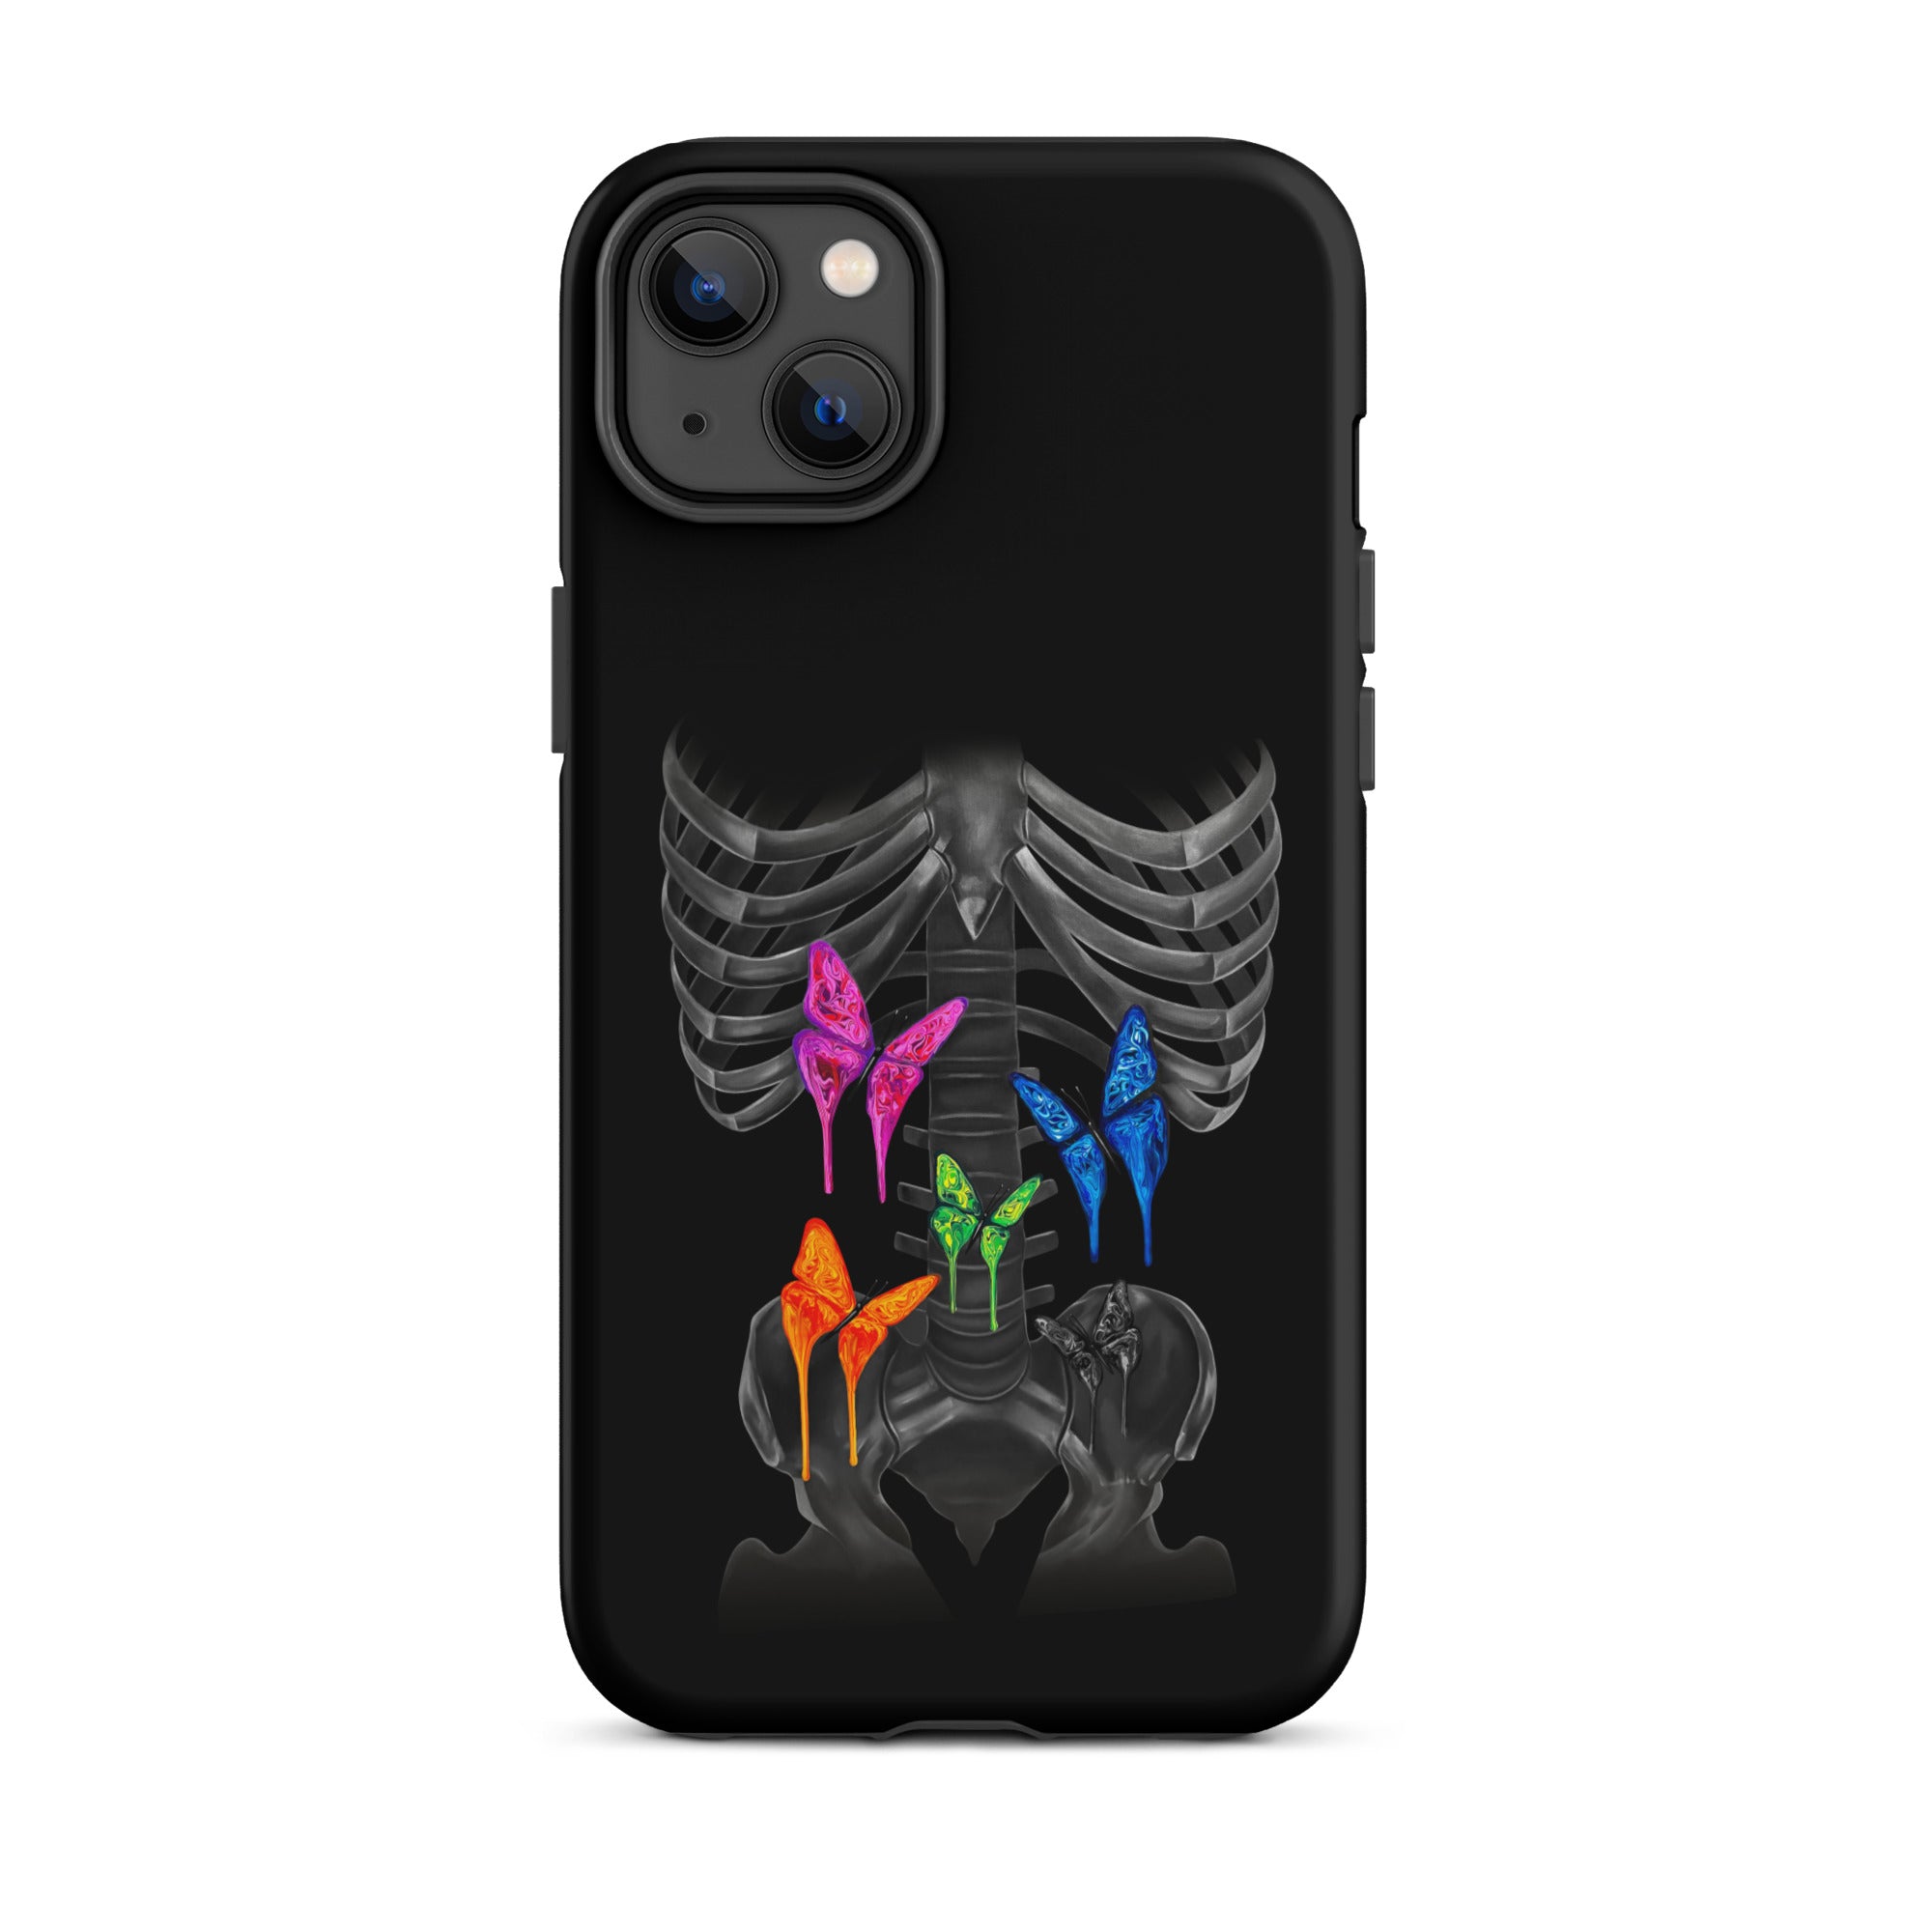 Butterflies iPhone® Case